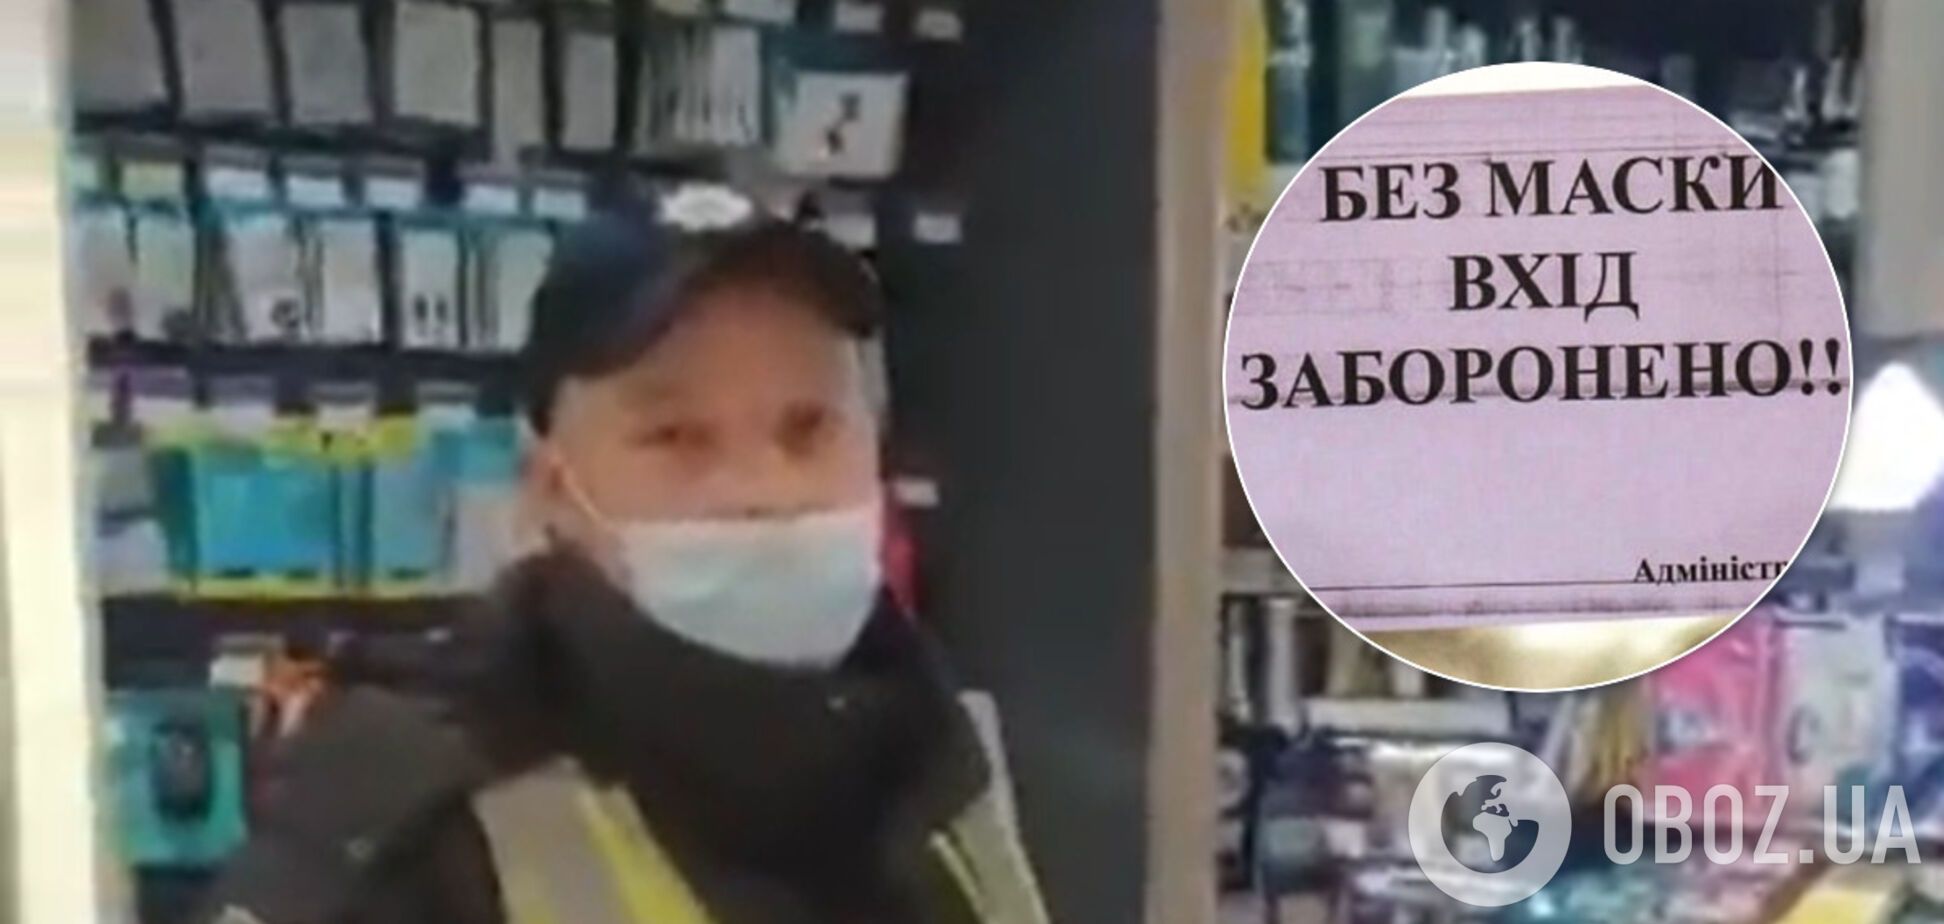 В Харькове полицейский обозвал покупателя из-за маски. Видео